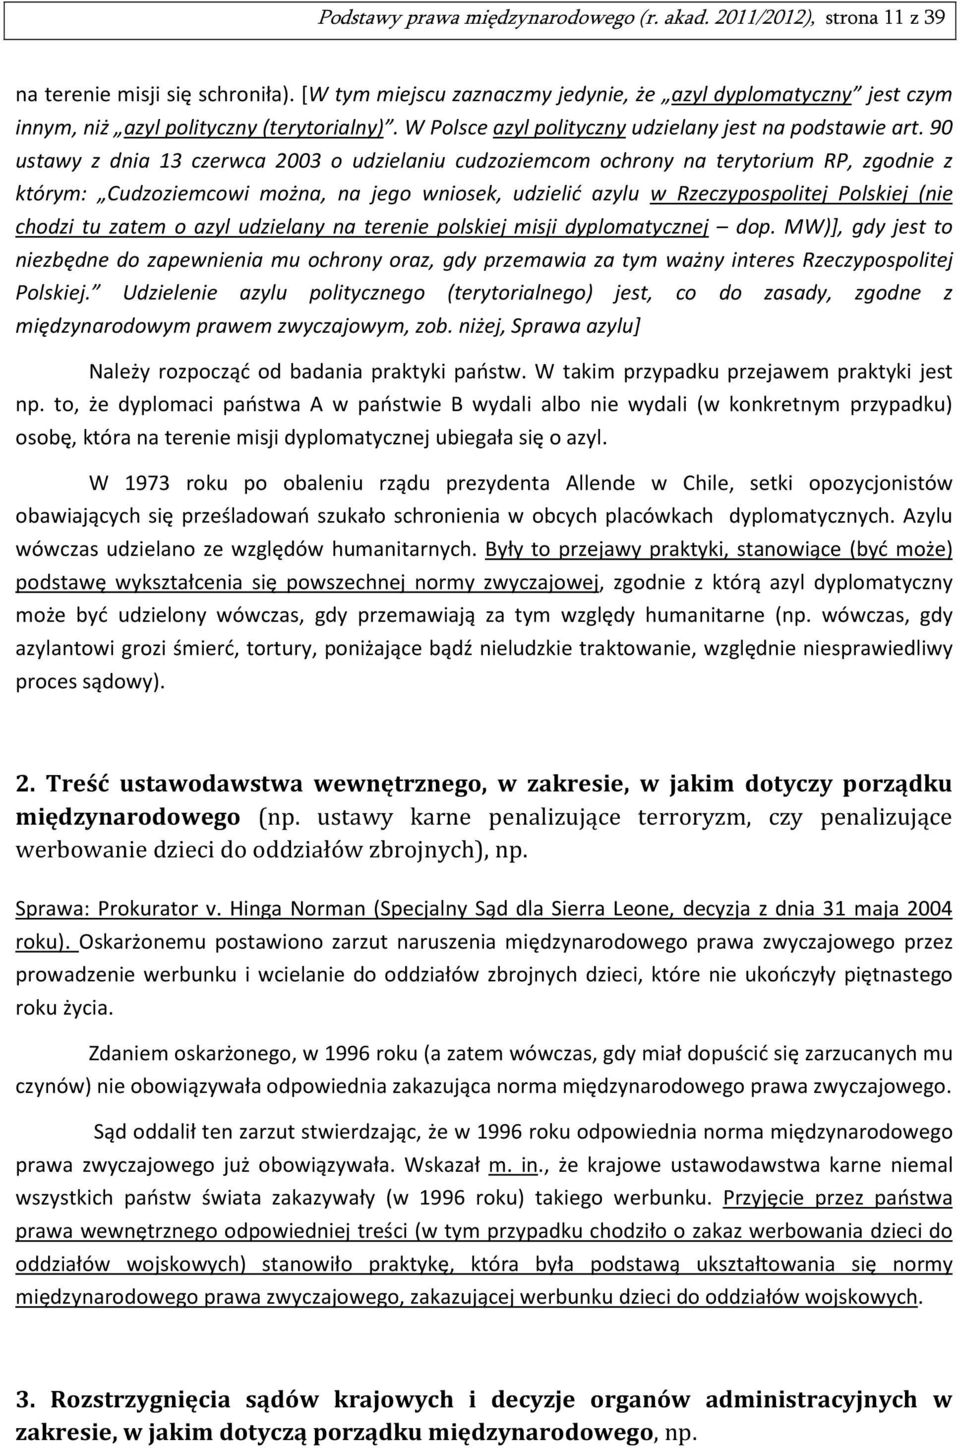 90 ustawy z dnia 13 czerwca 2003 o udzielaniu cudzoziemcom ochrony na terytorium RP, zgodnie z którym: Cudzoziemcowi można, na jego wniosek, udzielić azylu w Rzeczypospolitej Polskiej (nie chodzi tu